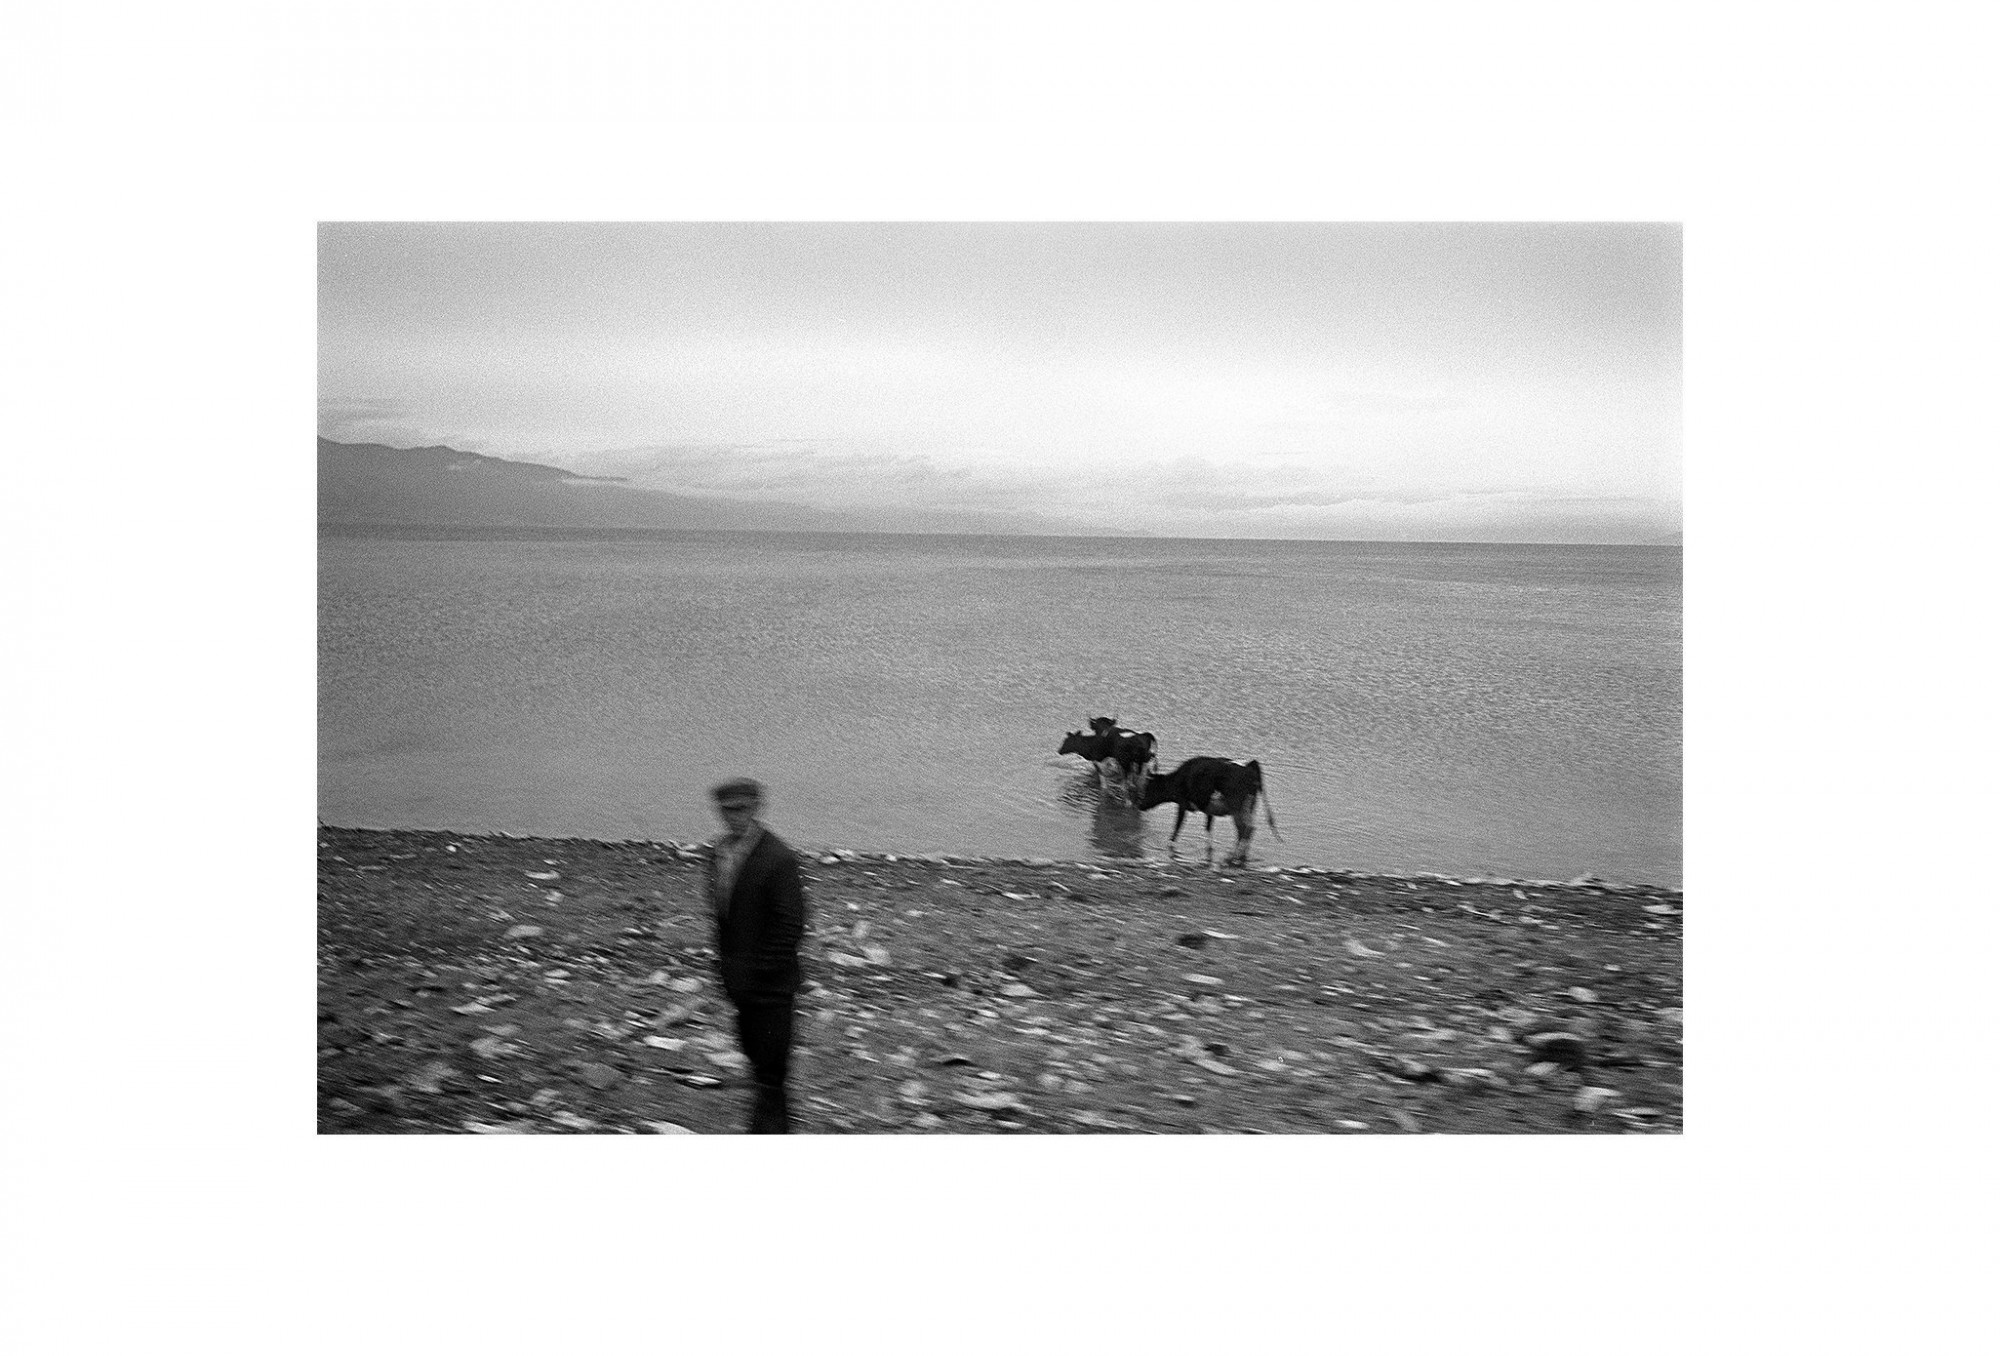 Afbeelding: Fotokunst Dominique Van Huffel, uit de reeks: Waar de sterre bleef stille staan. De koeman, Albanië.